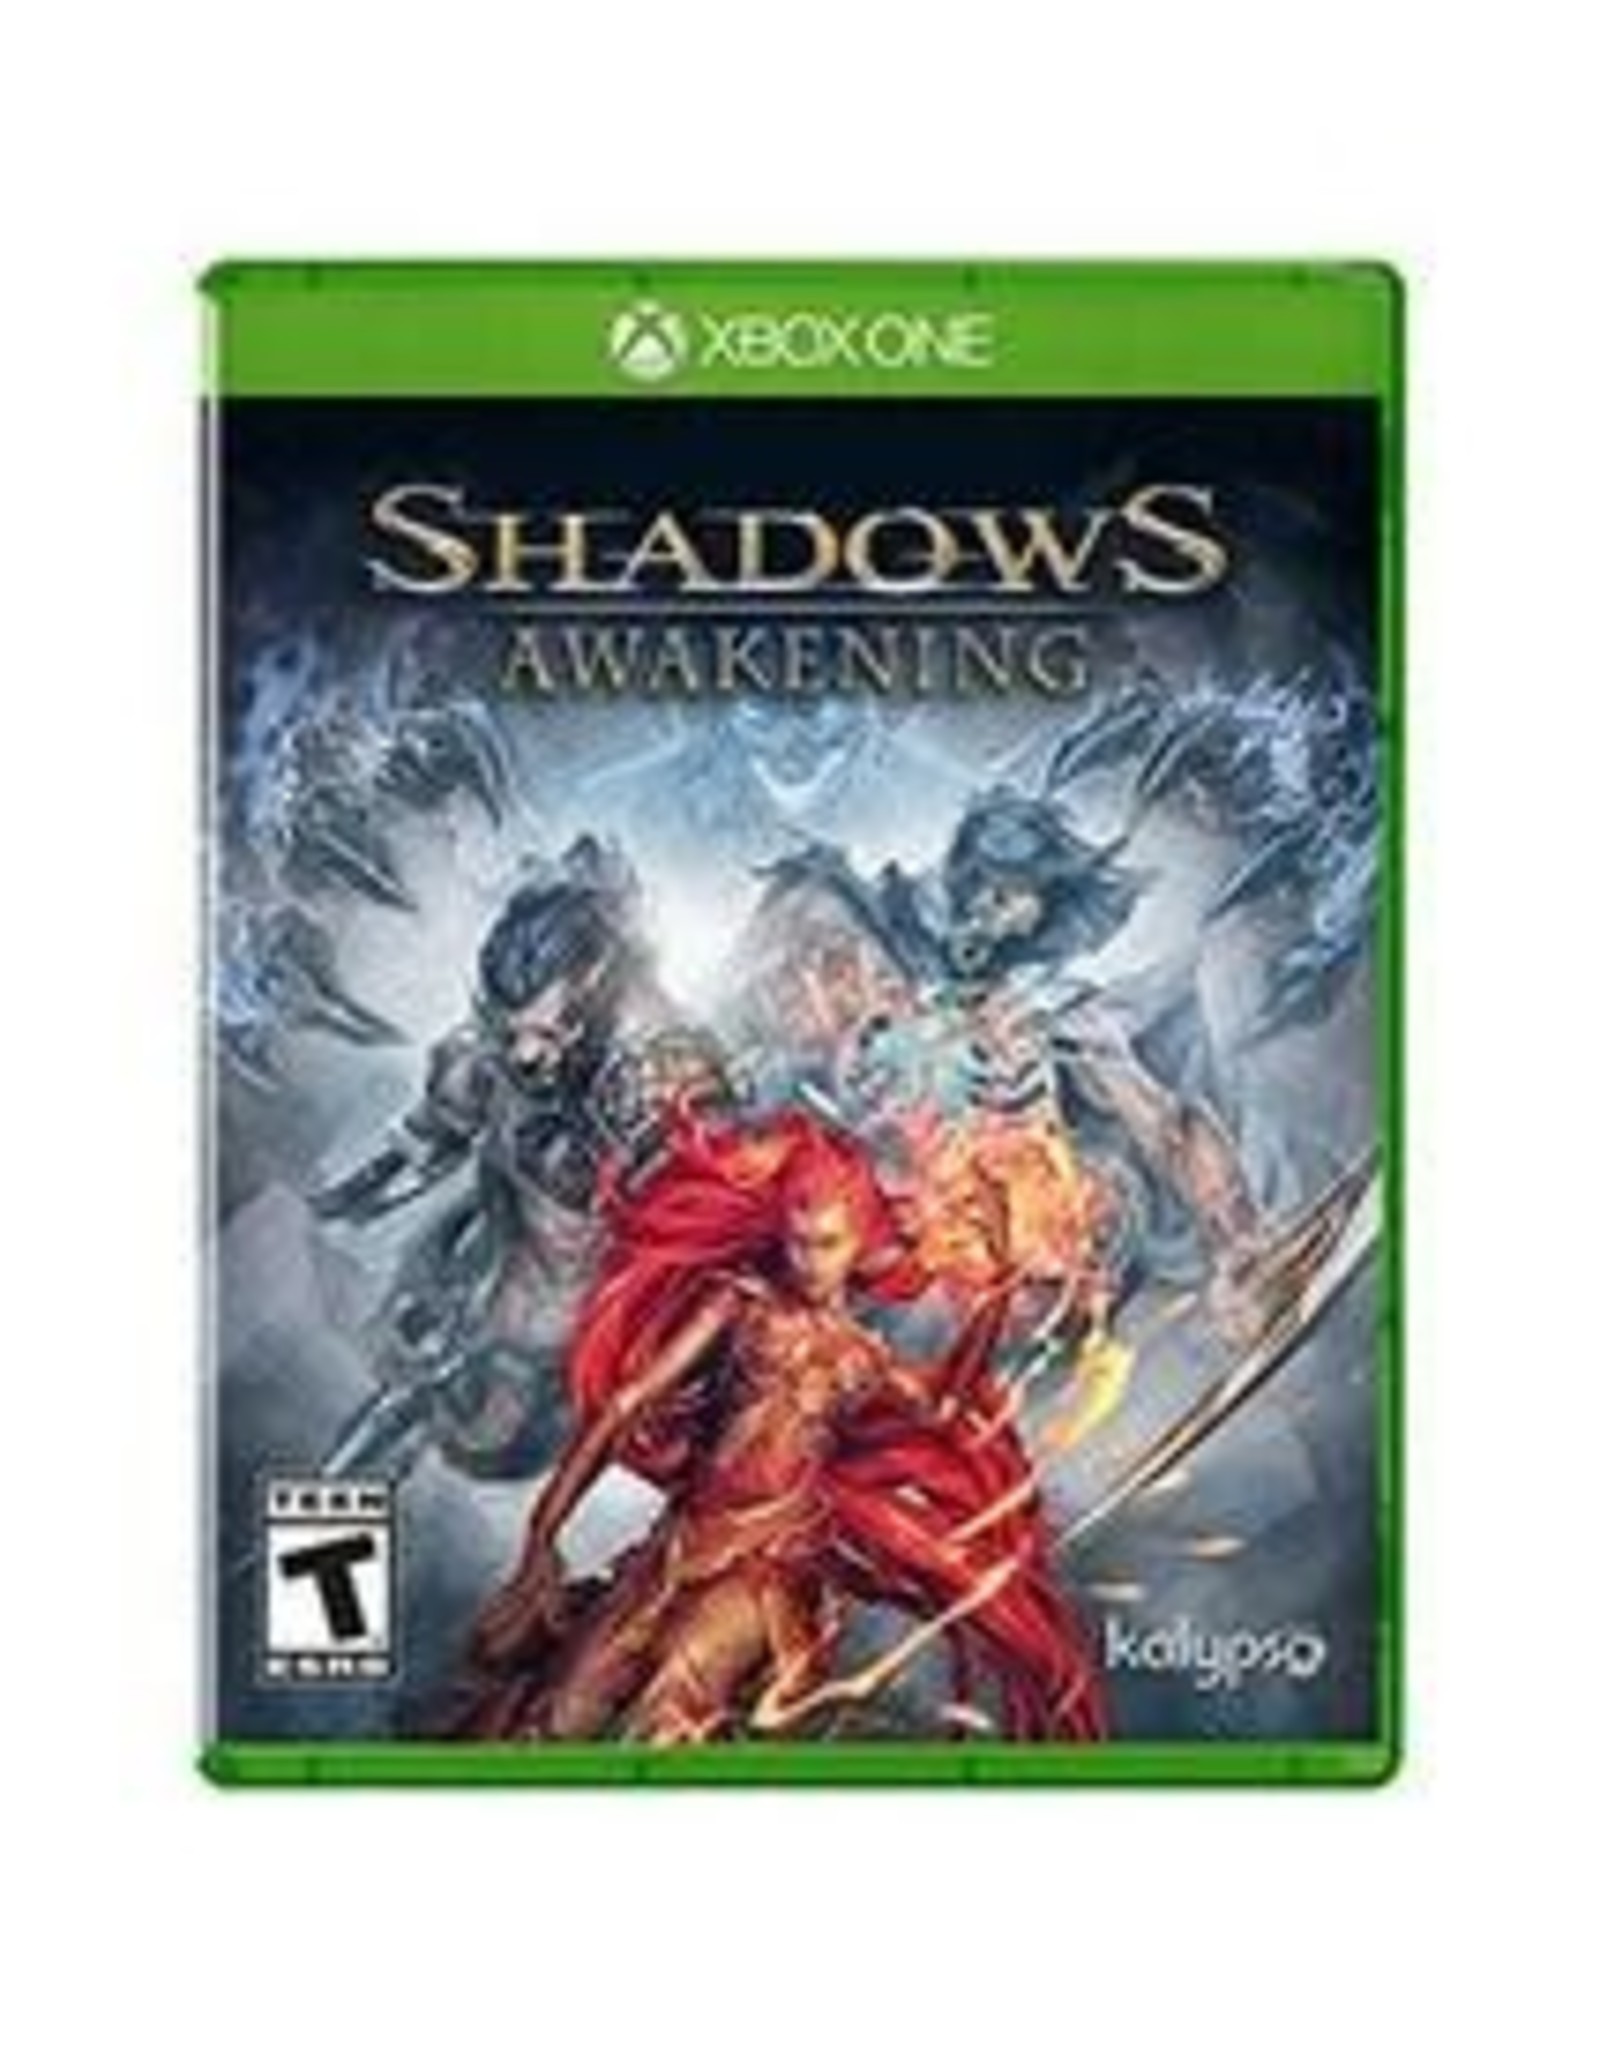 Xbox One Shadows Awakening (Used)